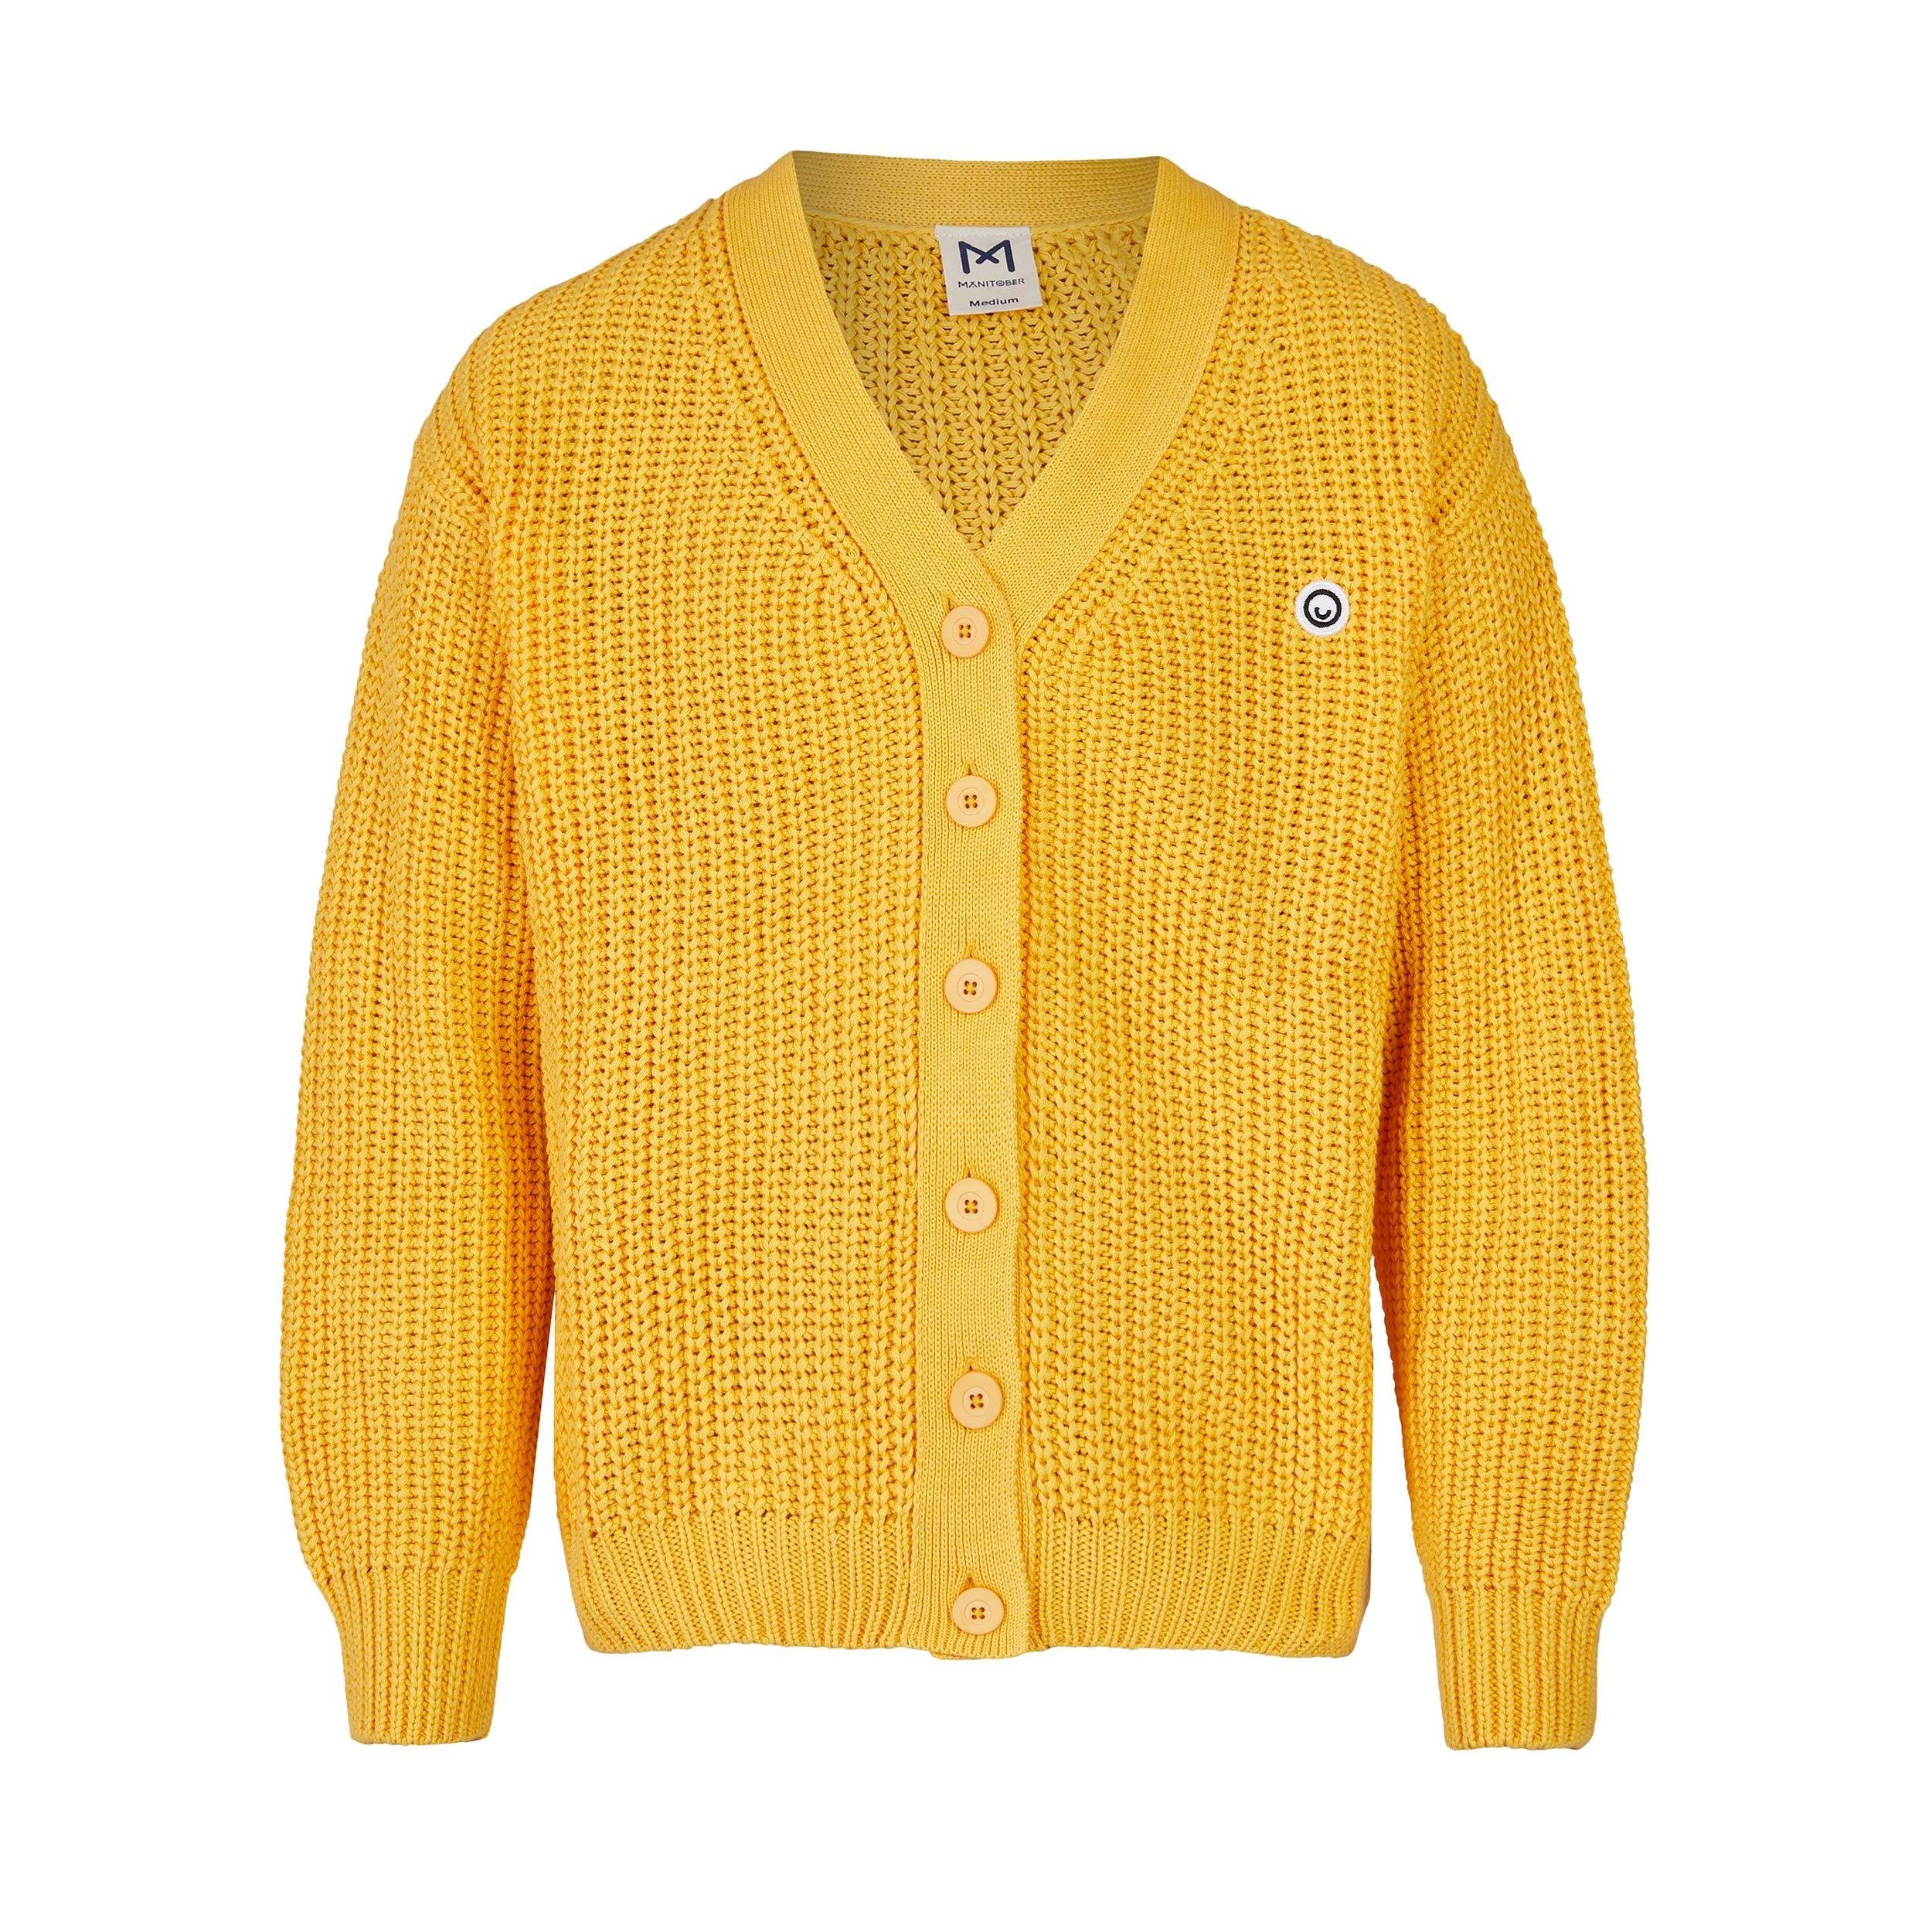 Gelbe Cardigans online kaufen | OTTO